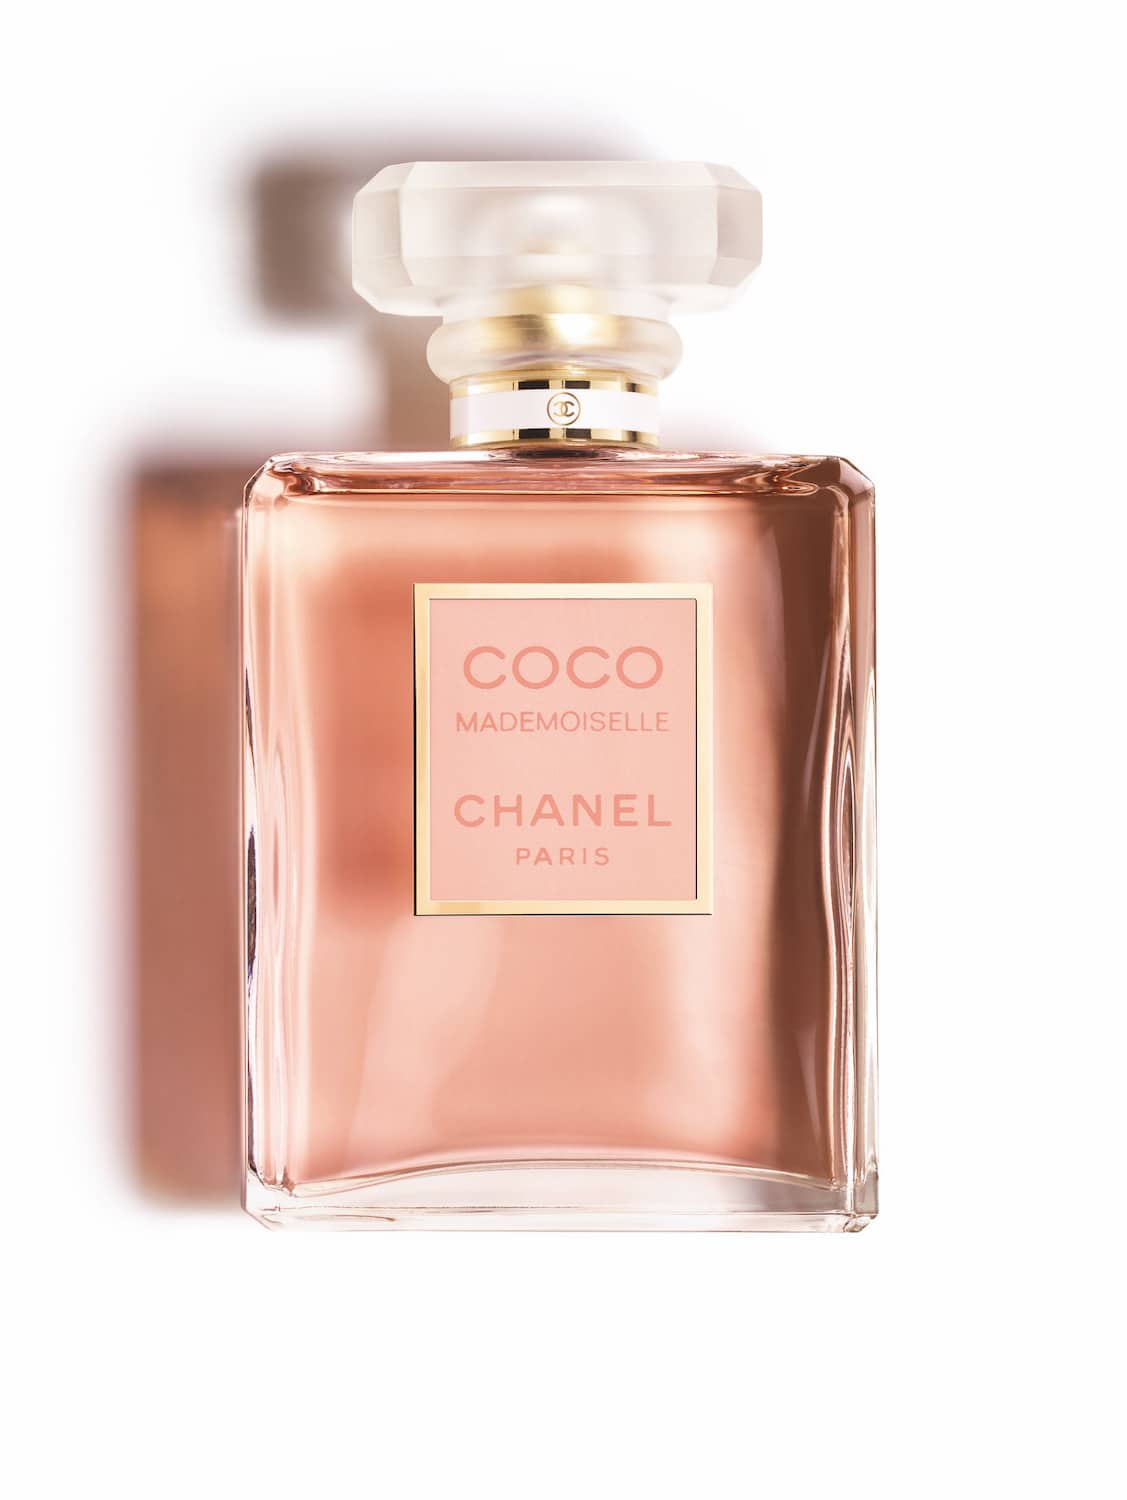 Het Boeiende Verhaal van Coco Mademoiselle van Chanel